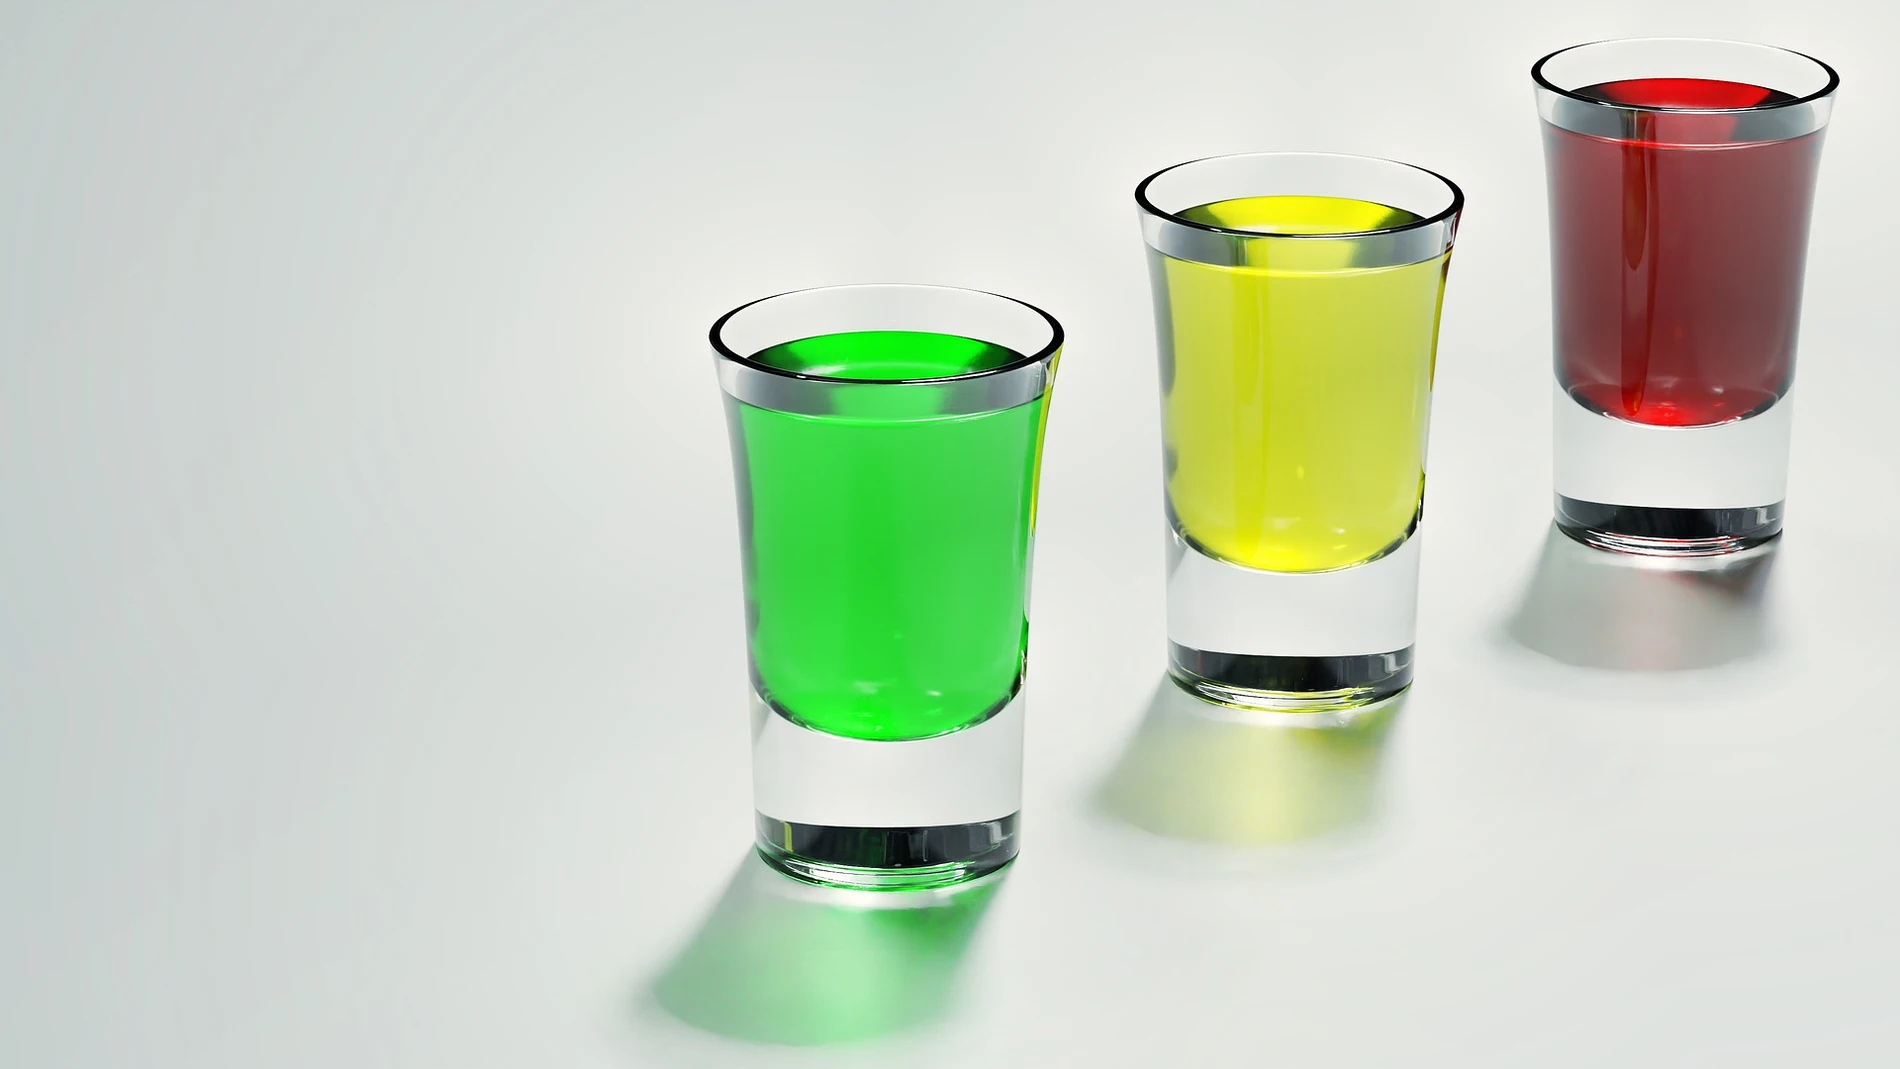 Tres vasos de chupito de distintos colores | Fuente: MasterTux / Pixabay